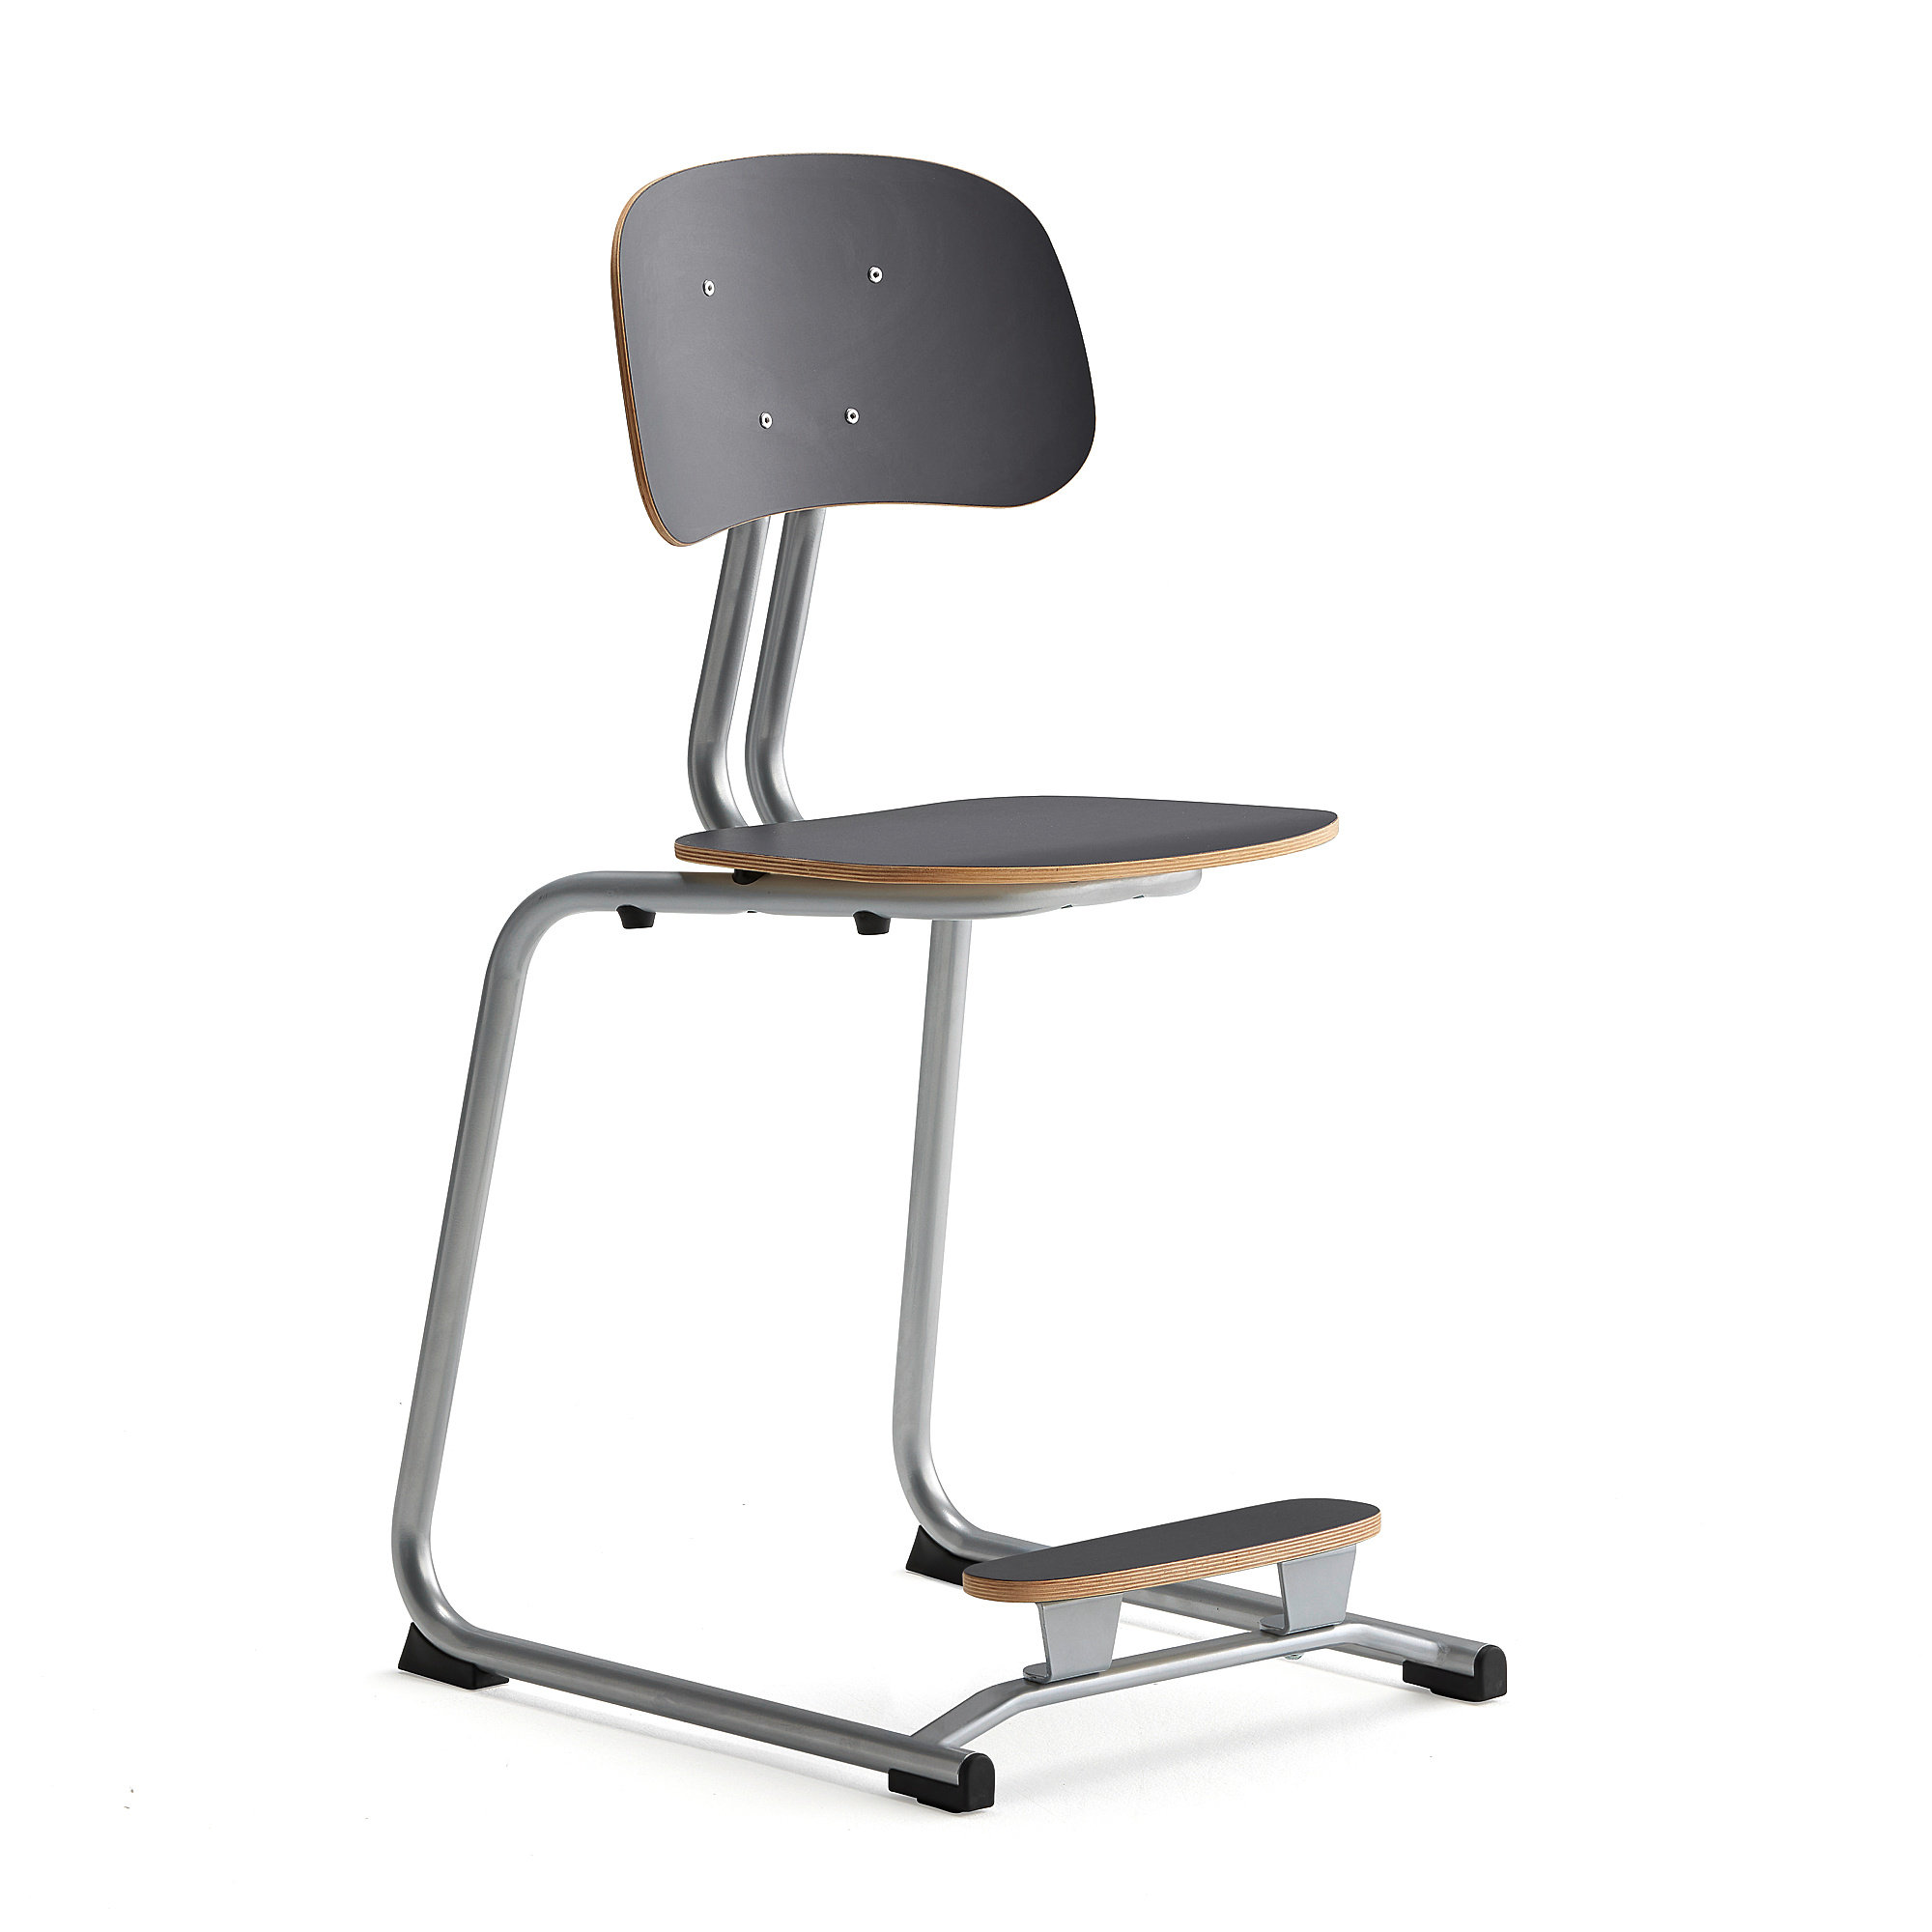 Školní židle YNGVE, ližinová podnož, výška 500 mm, stříbrná/antracitově šedá